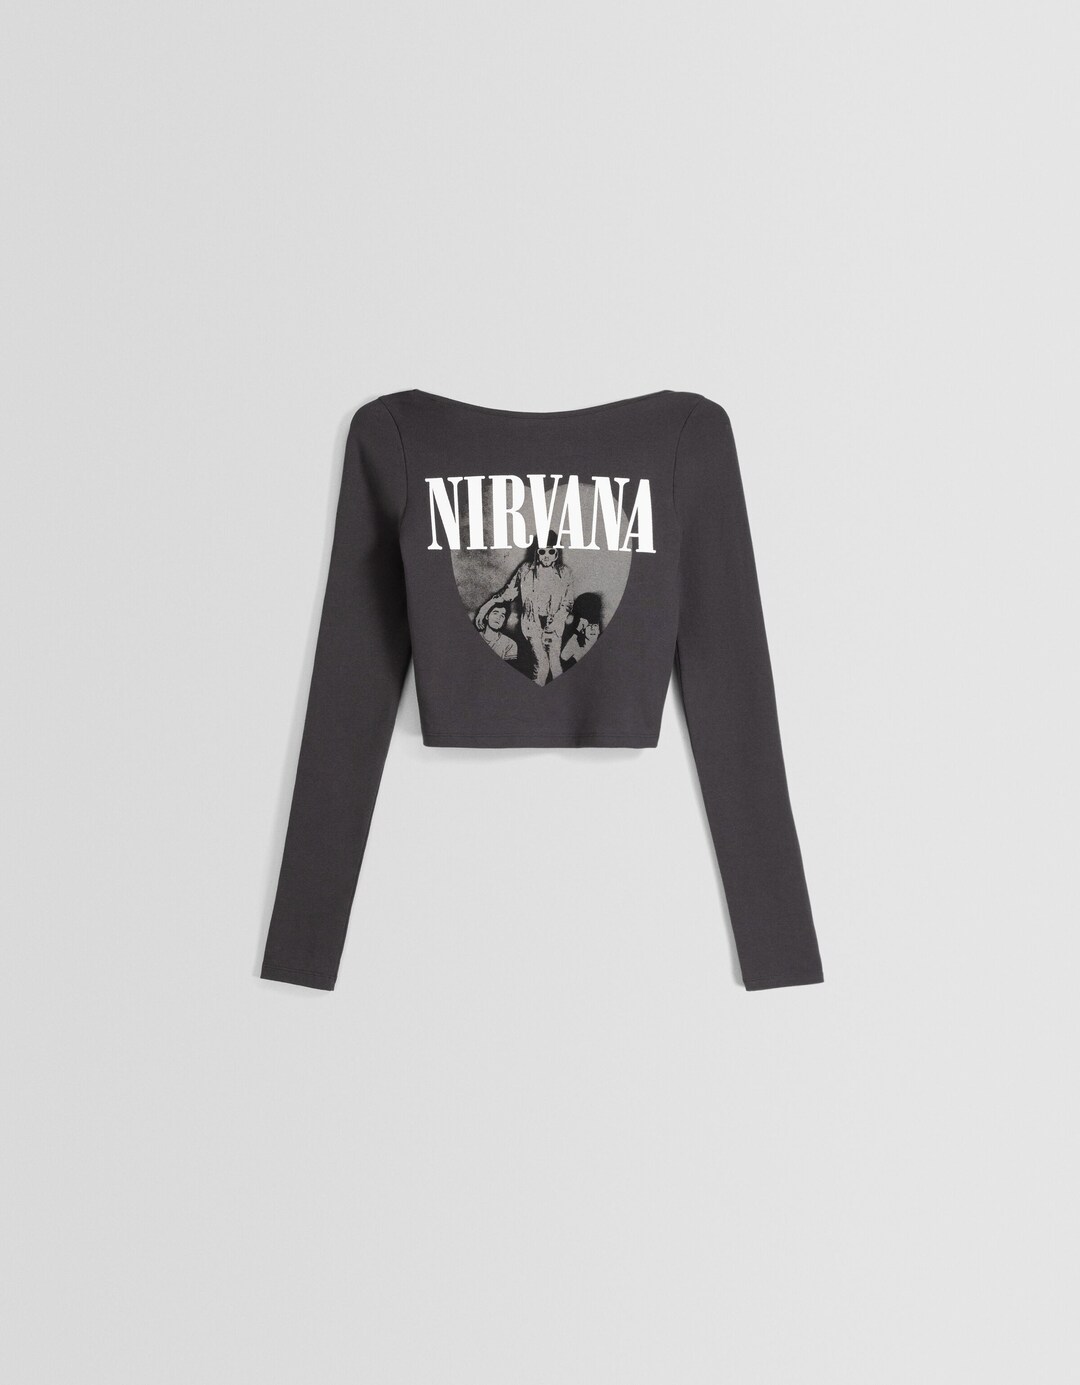 „Nirvana“ marškinėliai su ilgomis rankovėmis ir atvira nugara su raštu